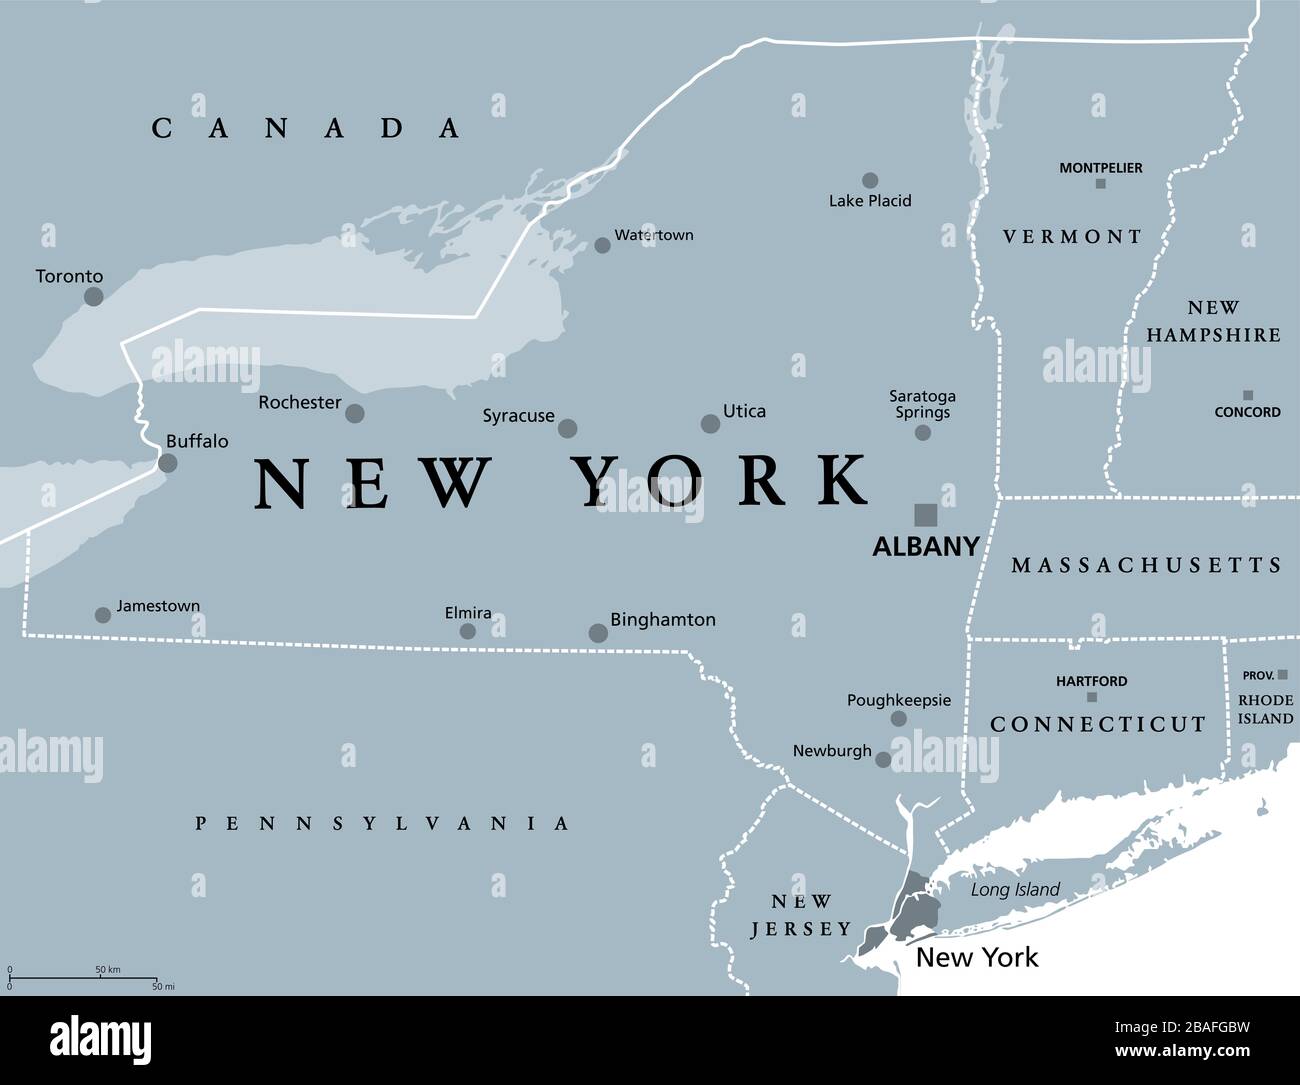 New York state (NYS), mappa politica grigia, con la capitale Albany, confini e città importanti. Stati Uniti nordorientali dell'America. Foto Stock